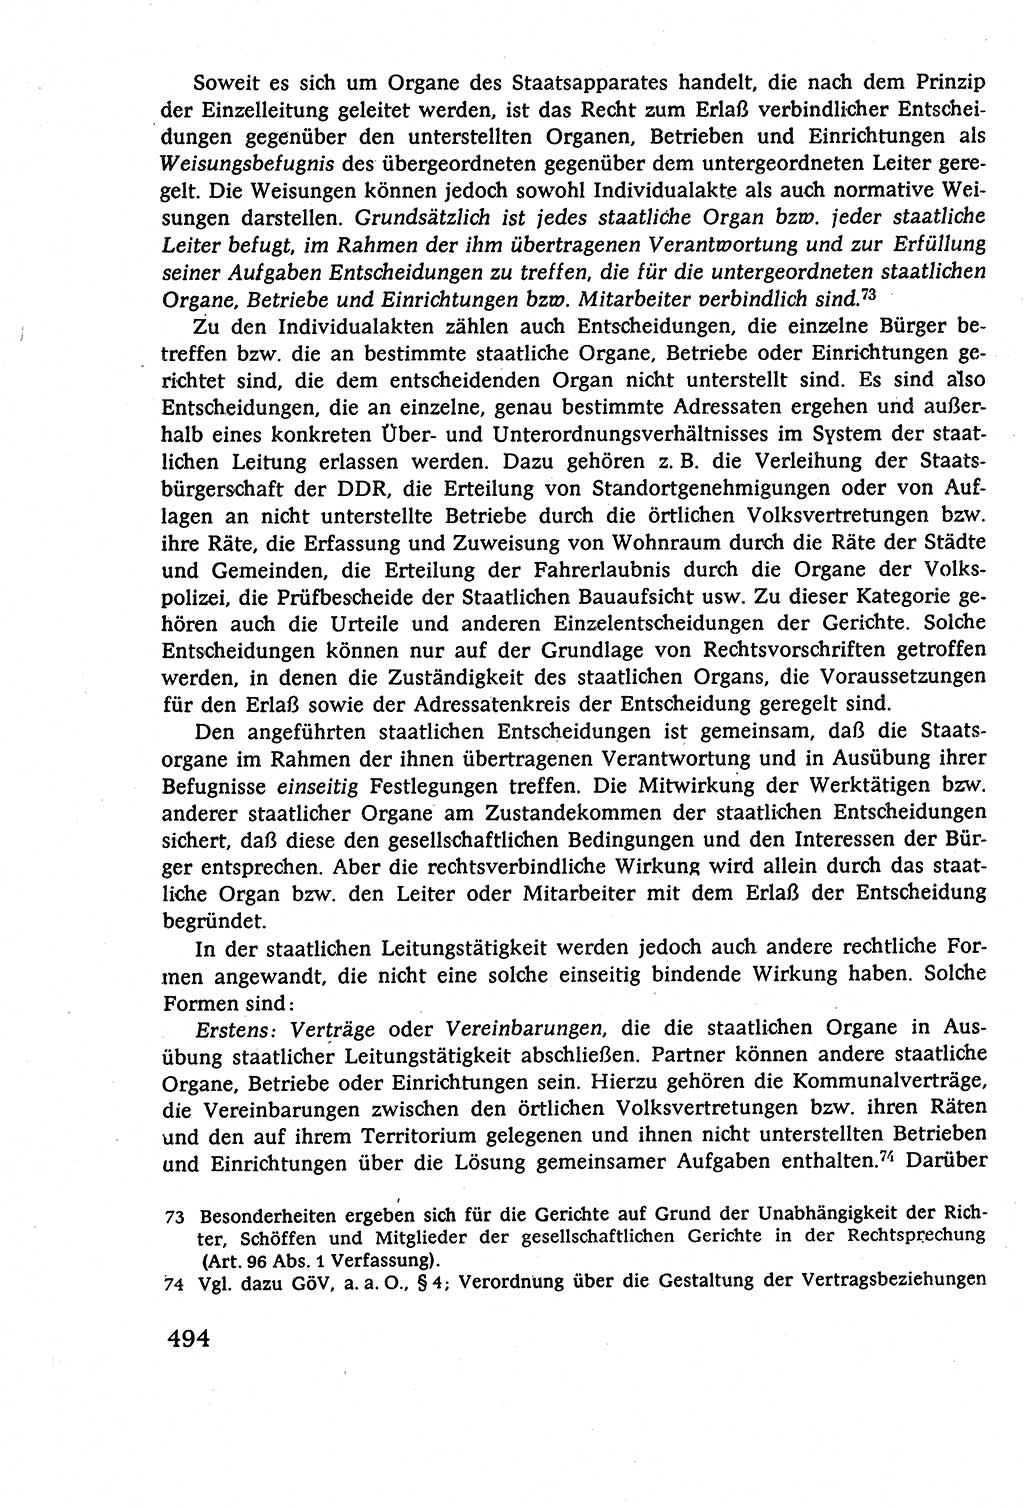 Staatsrecht der DDR (Deutsche Demokratische Republik), Lehrbuch 1977, Seite 494 (St.-R. DDR Lb. 1977, S. 494)